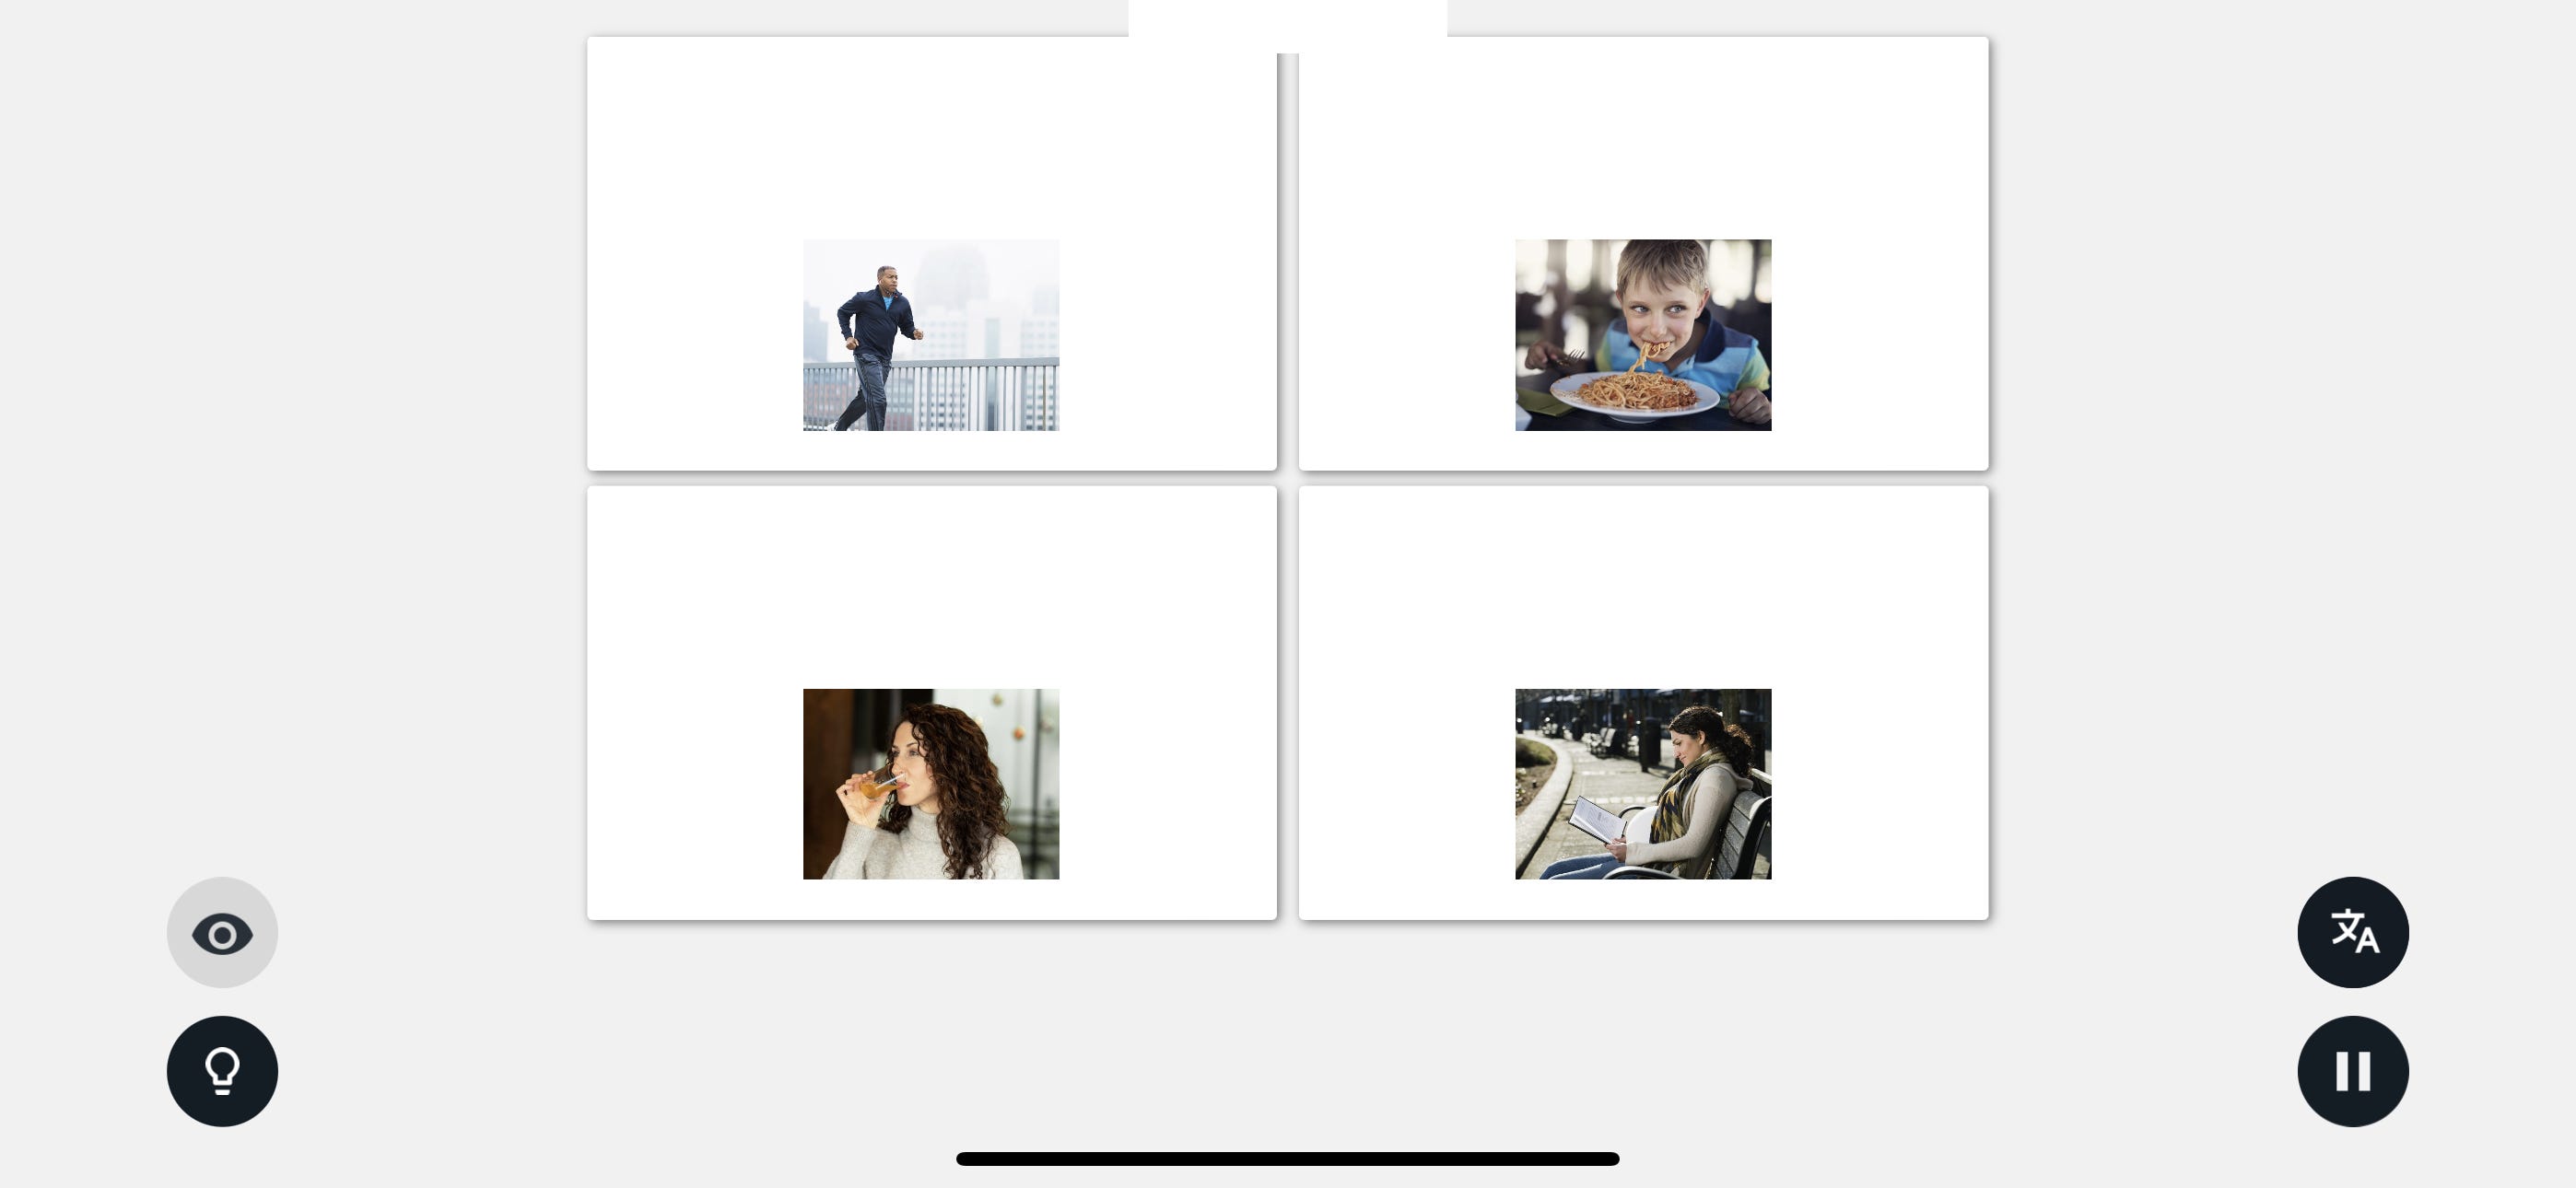 Screenshot dell'app per l'apprendimento delle lingue di Rosetta Stone, che mostra quattro flashcard con immagini di persone su di esse.